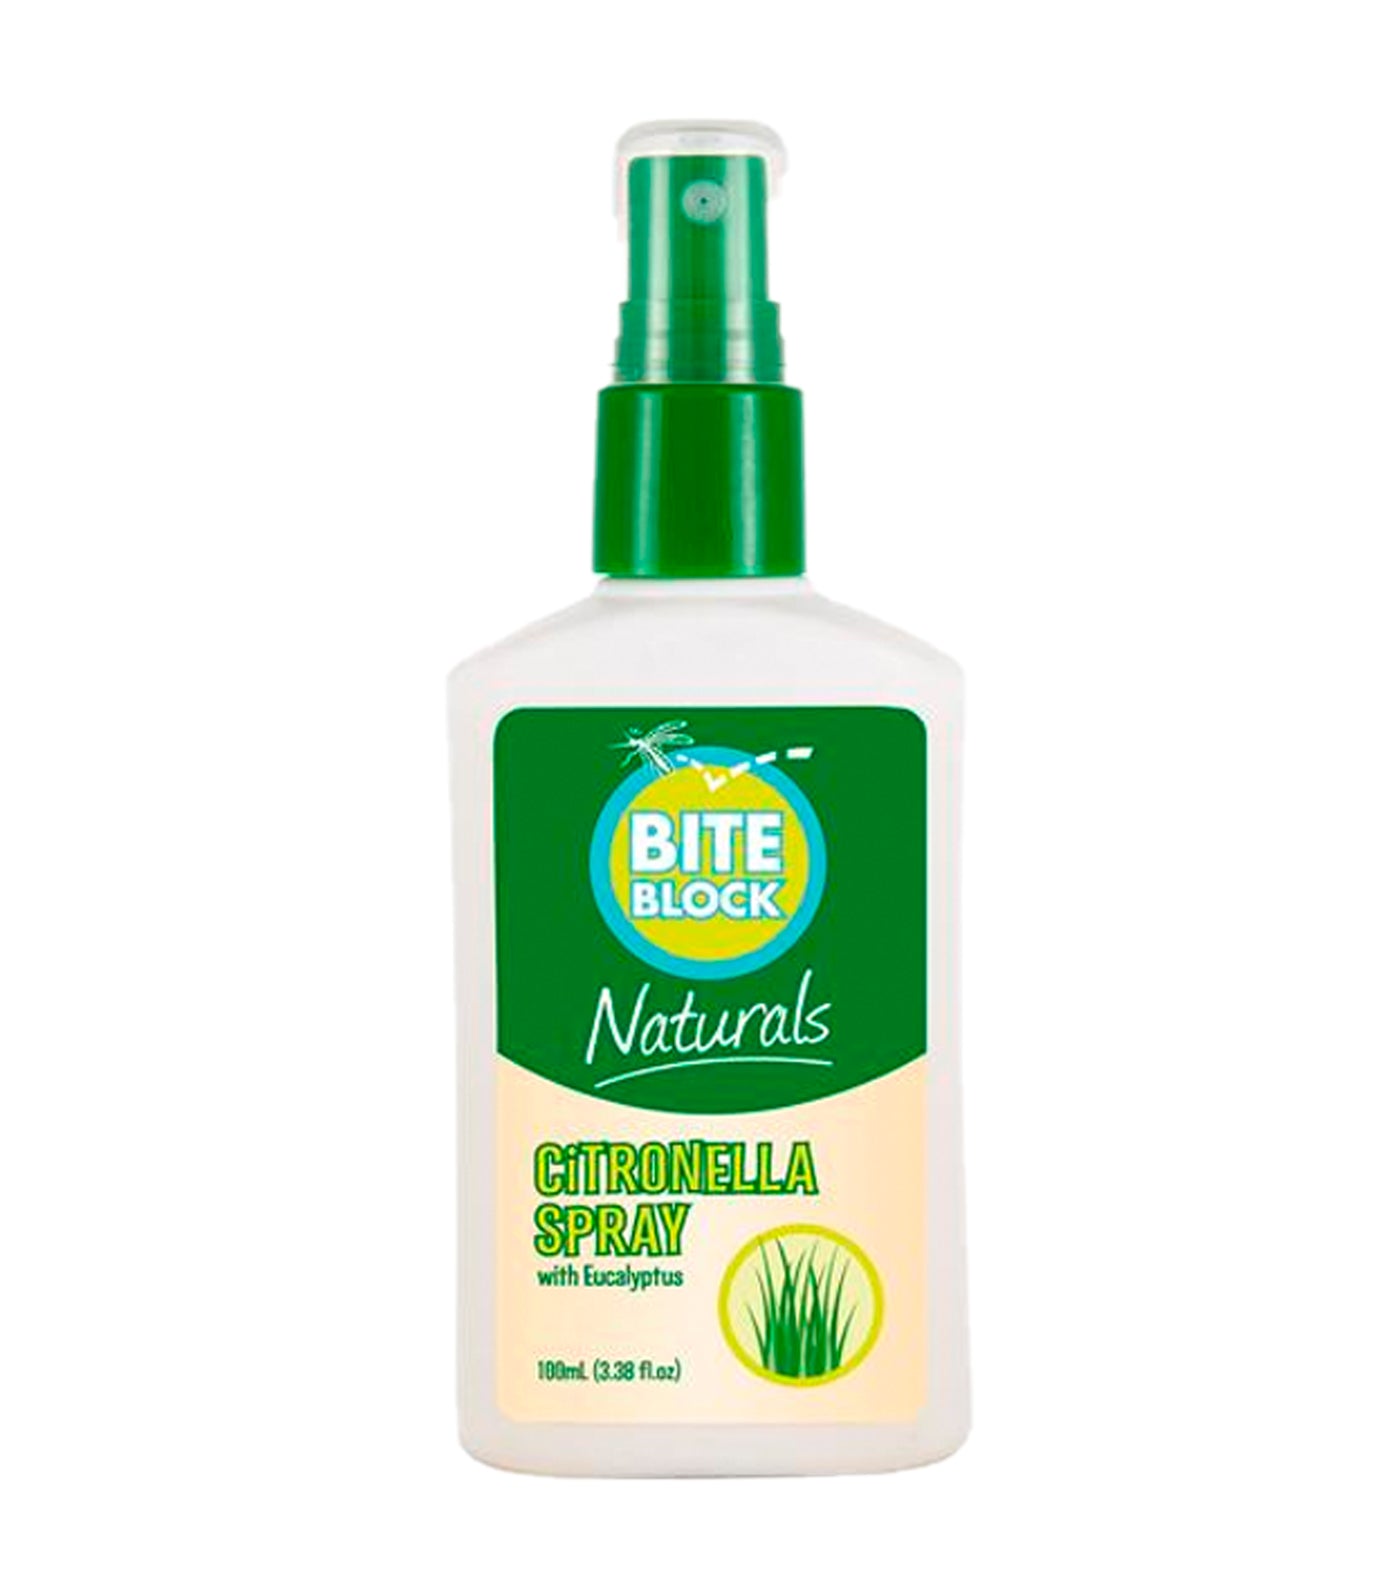 bite block naturals citronella spray (100ml)